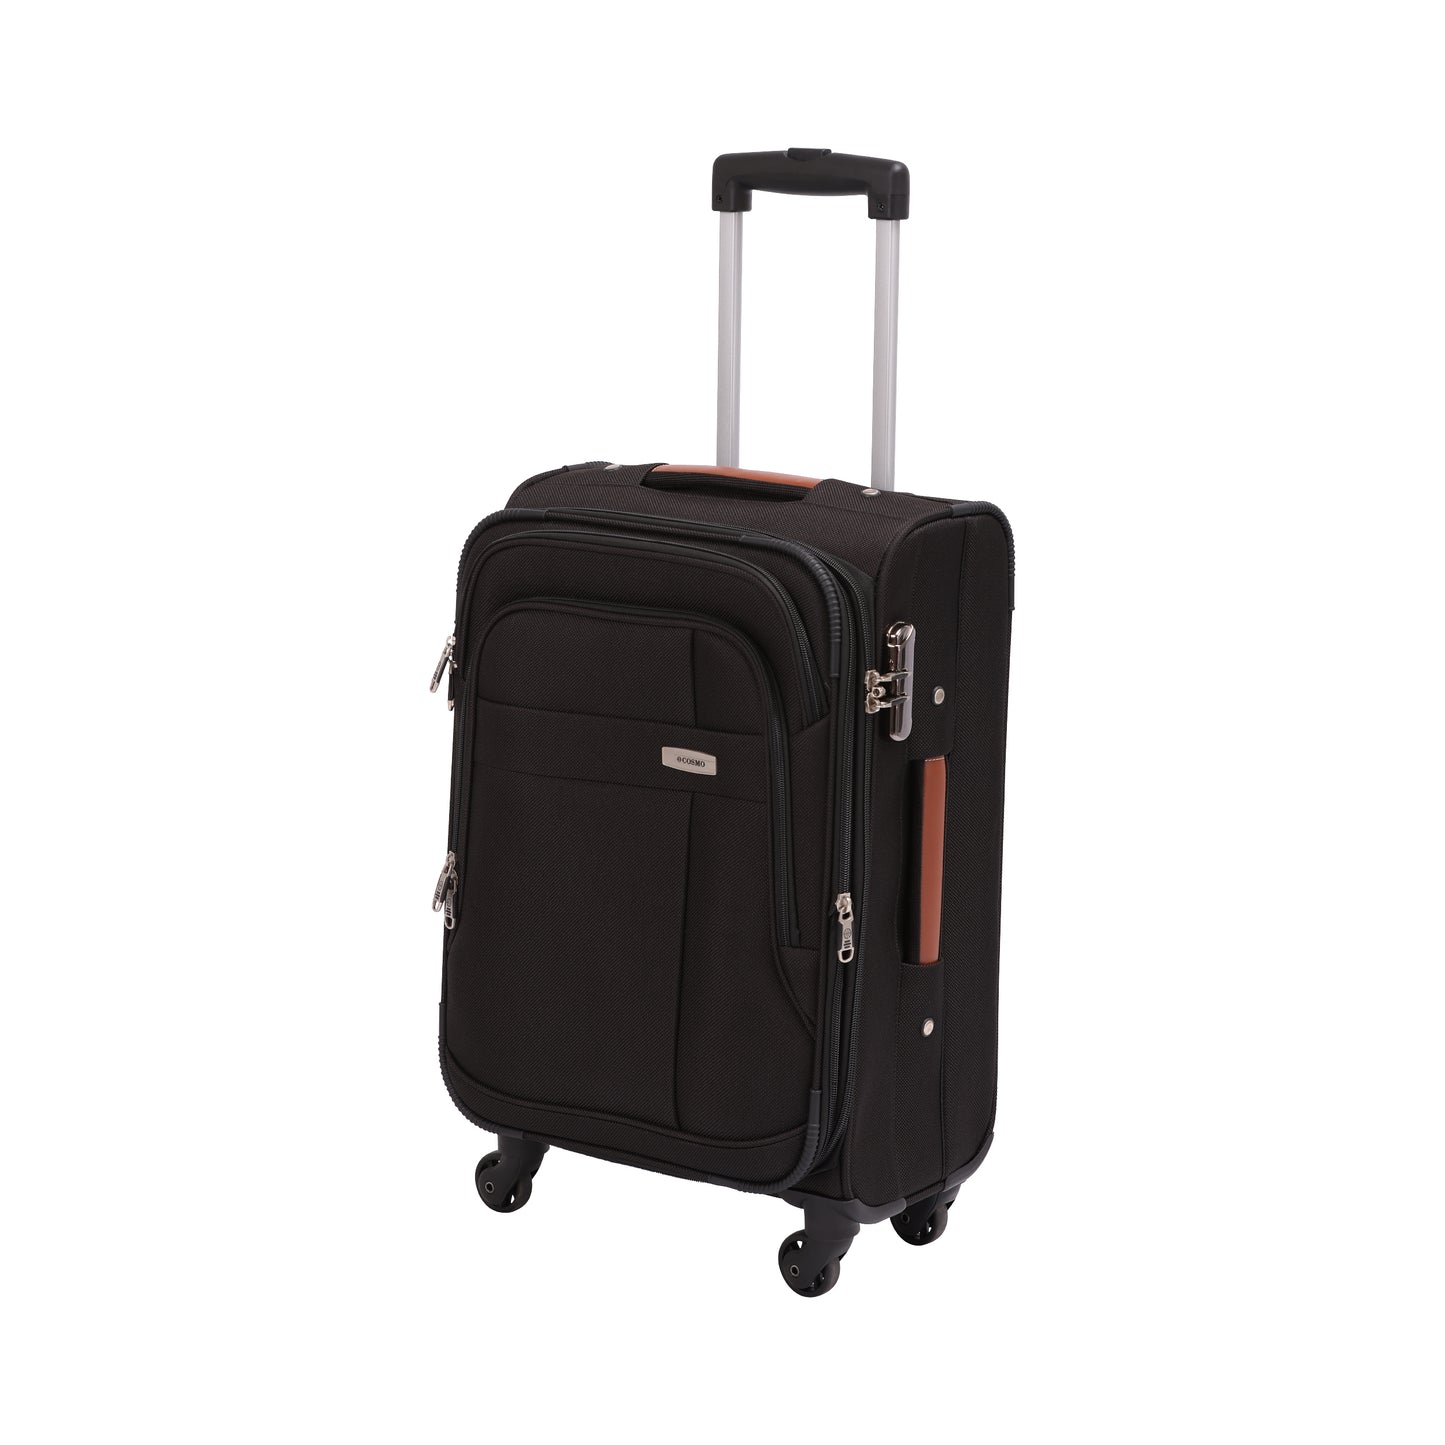 Cosmo Maxima 4W 80 cm Soft Luggage Trolley Case